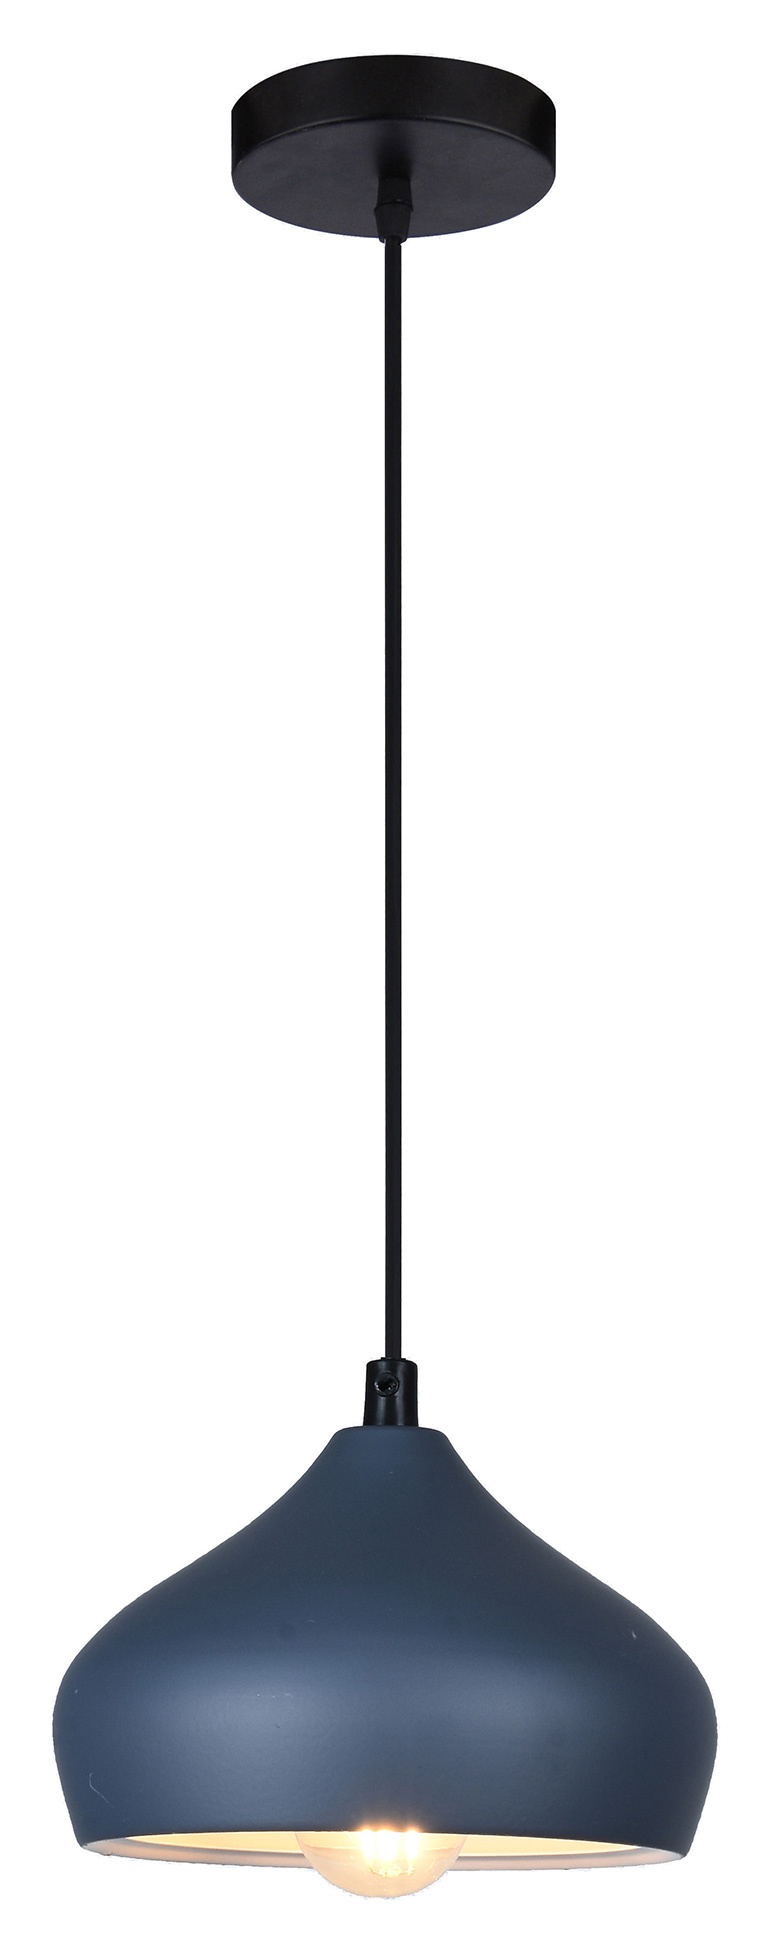 Светильник Hiper Venice H155-6 подвес. 60Вт серый/черный